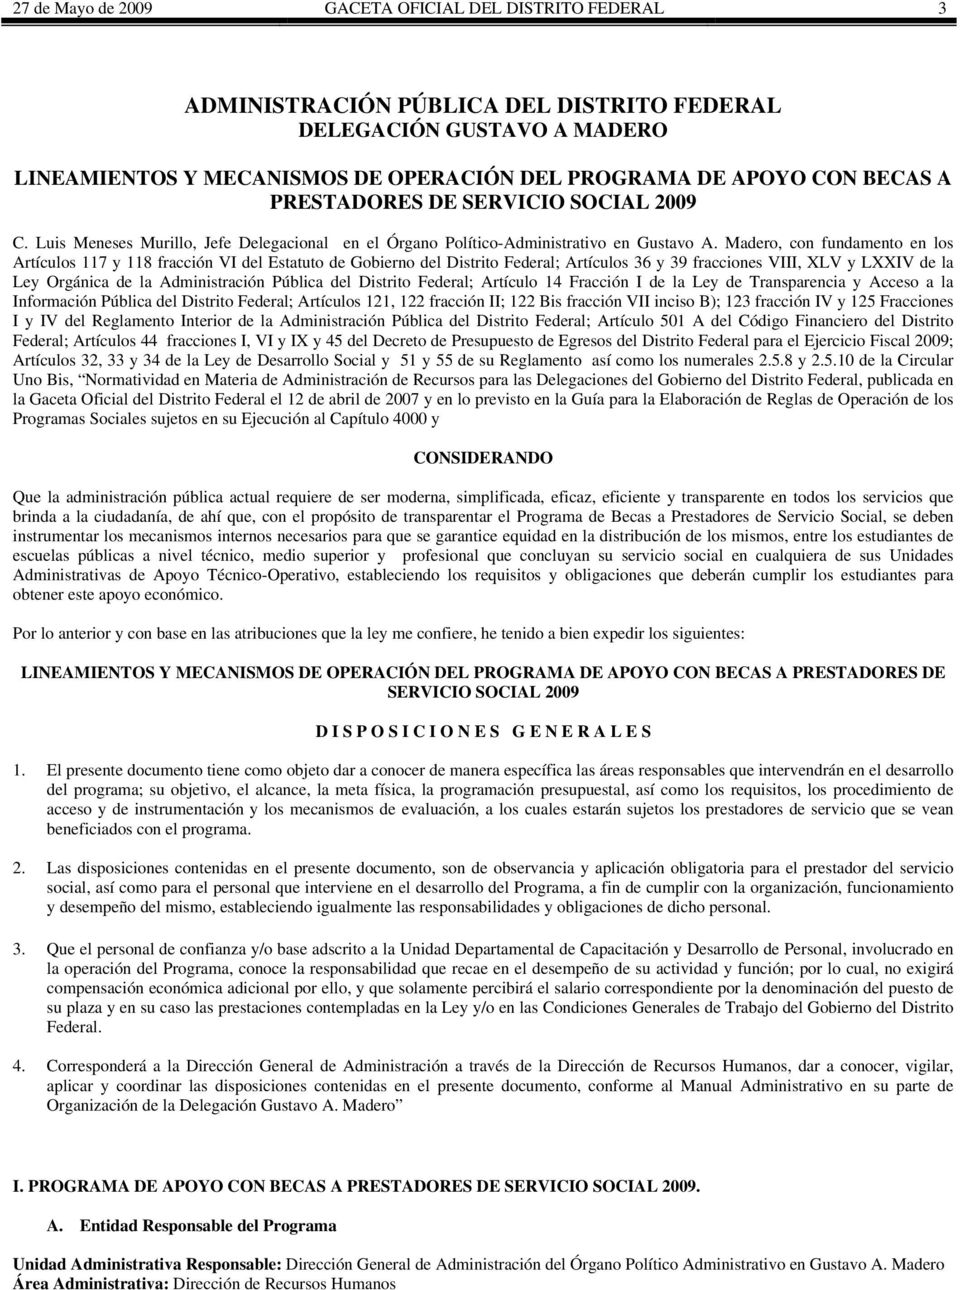 Madero, con fundamento en los Artículos 117 y 118 fracción VI del Estatuto de Gobierno del Distrito Federal; Artículos 36 y 39 fracciones VIII, XLV y LXXIV de la Ley Orgánica de la Administración